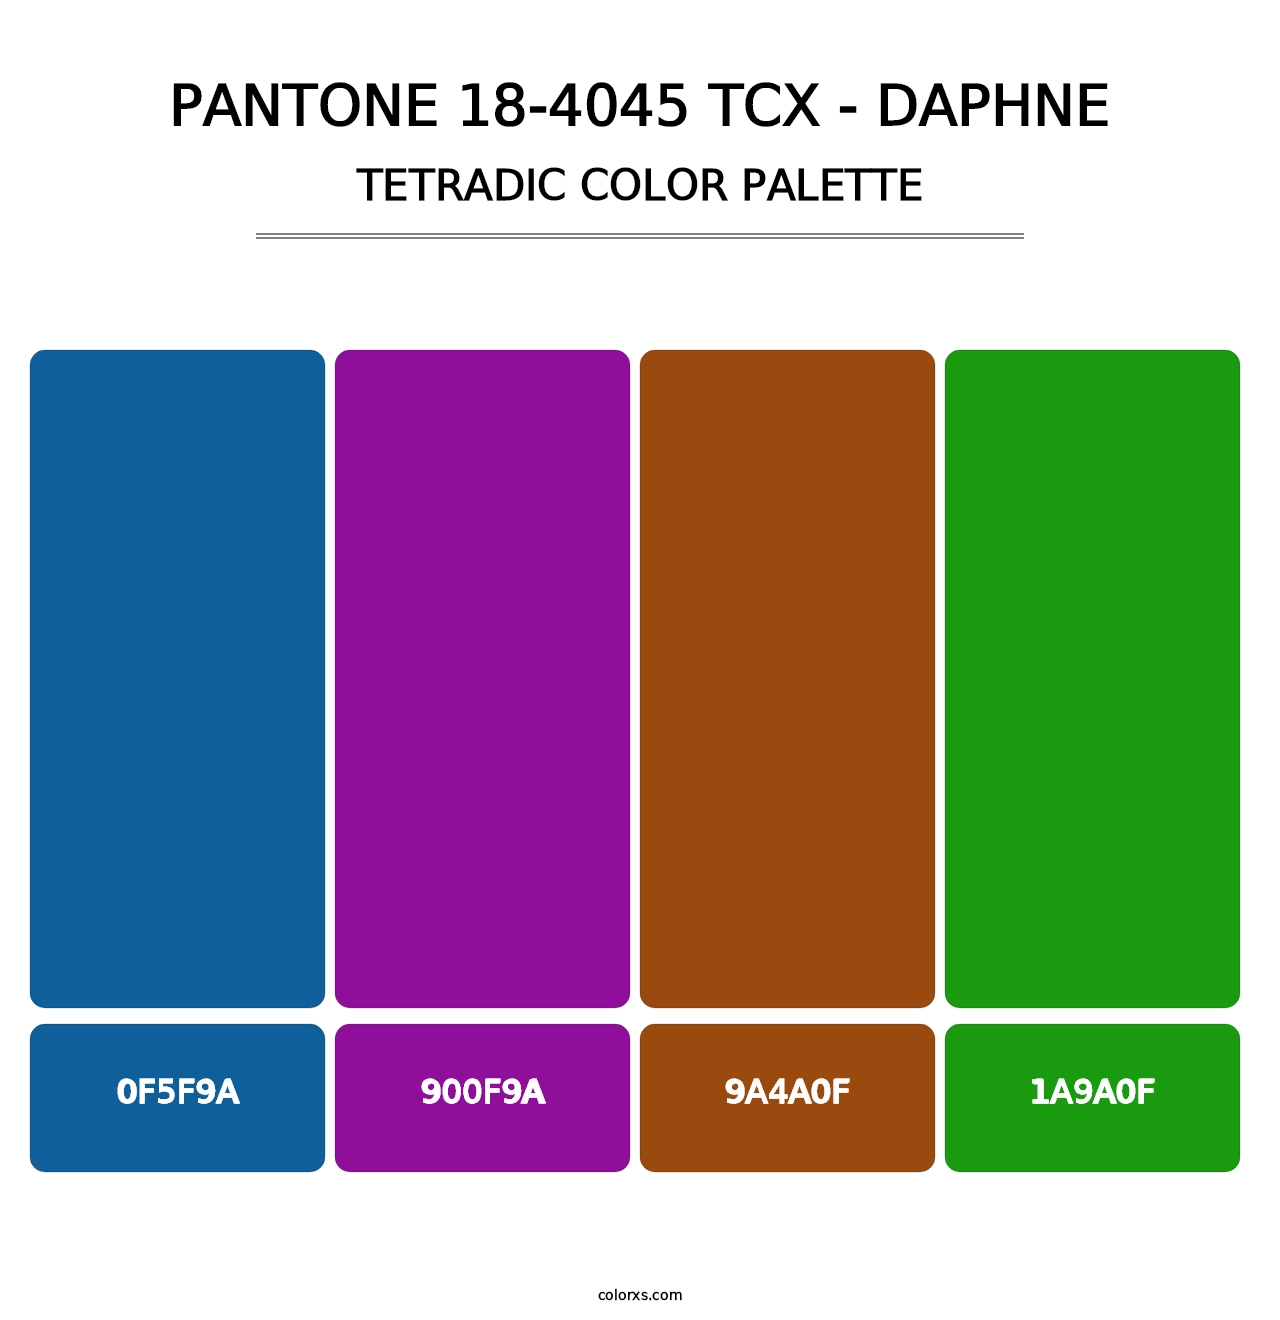 PANTONE 18-4045 TCX - Daphne - Tetradic Color Palette